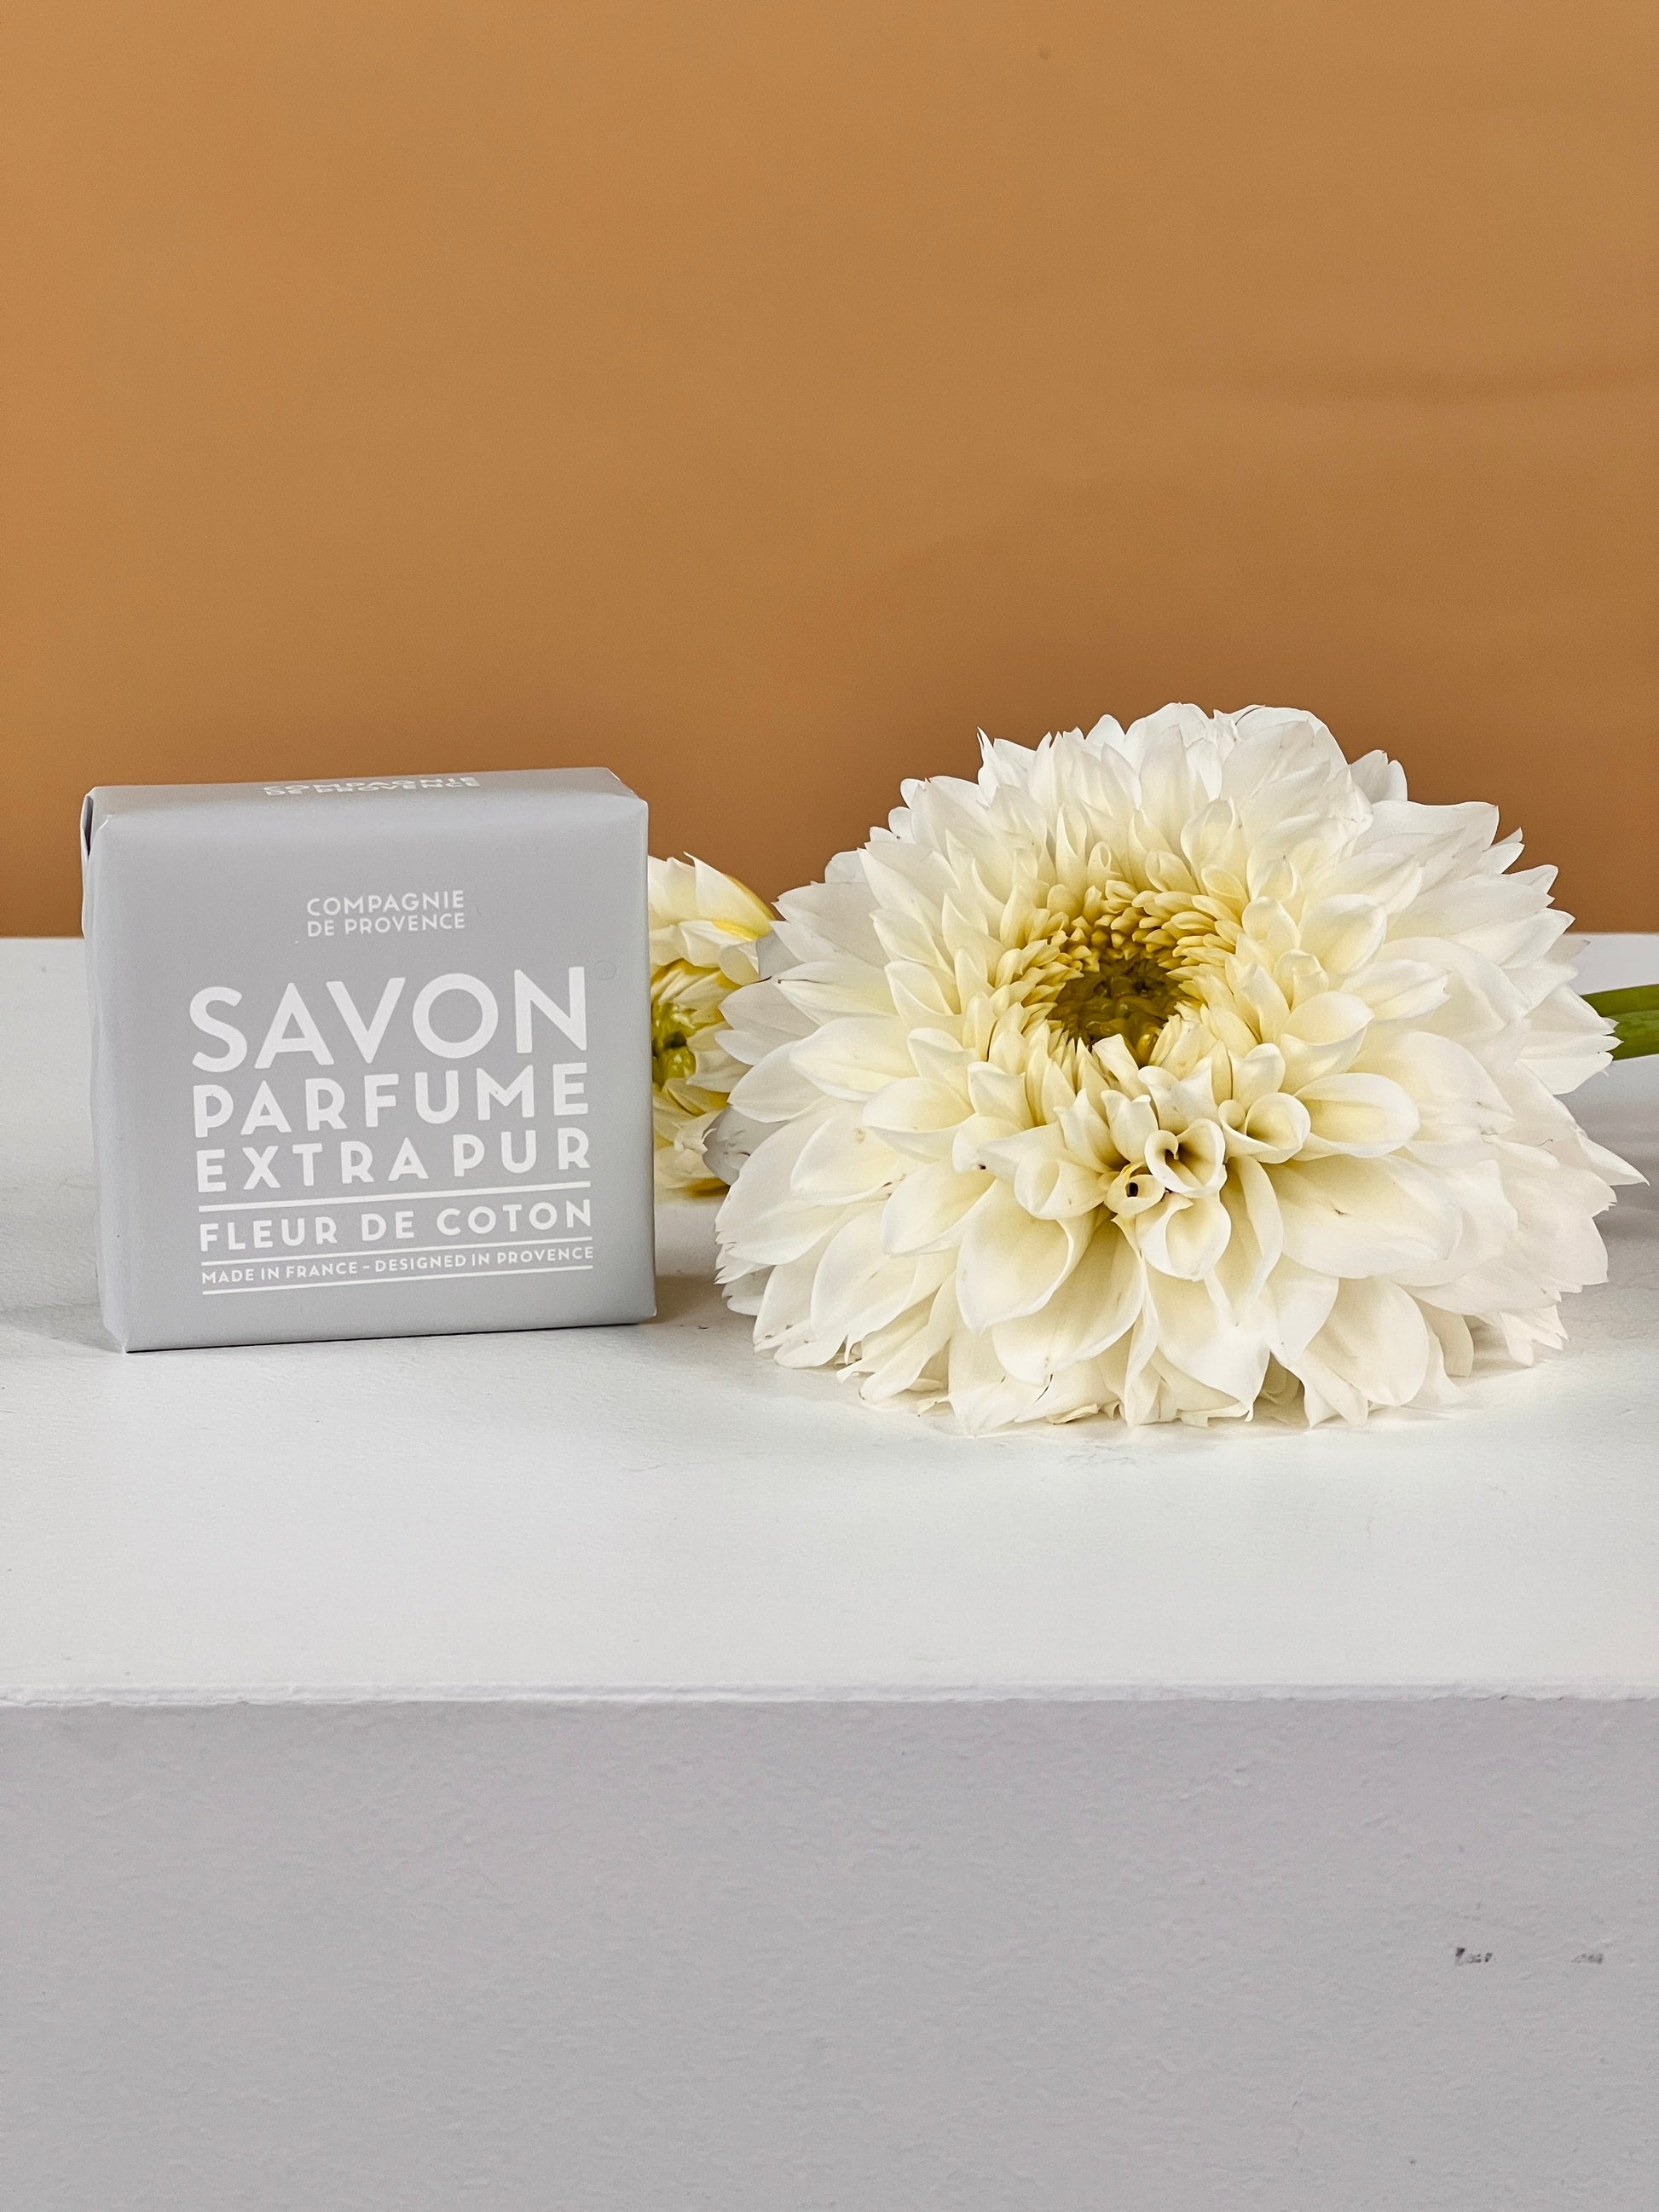 The Cotton Flower Range - Choose Your Own-Flower-Delivery-Gold-Coast-Florist-La Compagnie de Provence-Solid Soap-https://www.flowersgoldcoast.com.au-best-florist